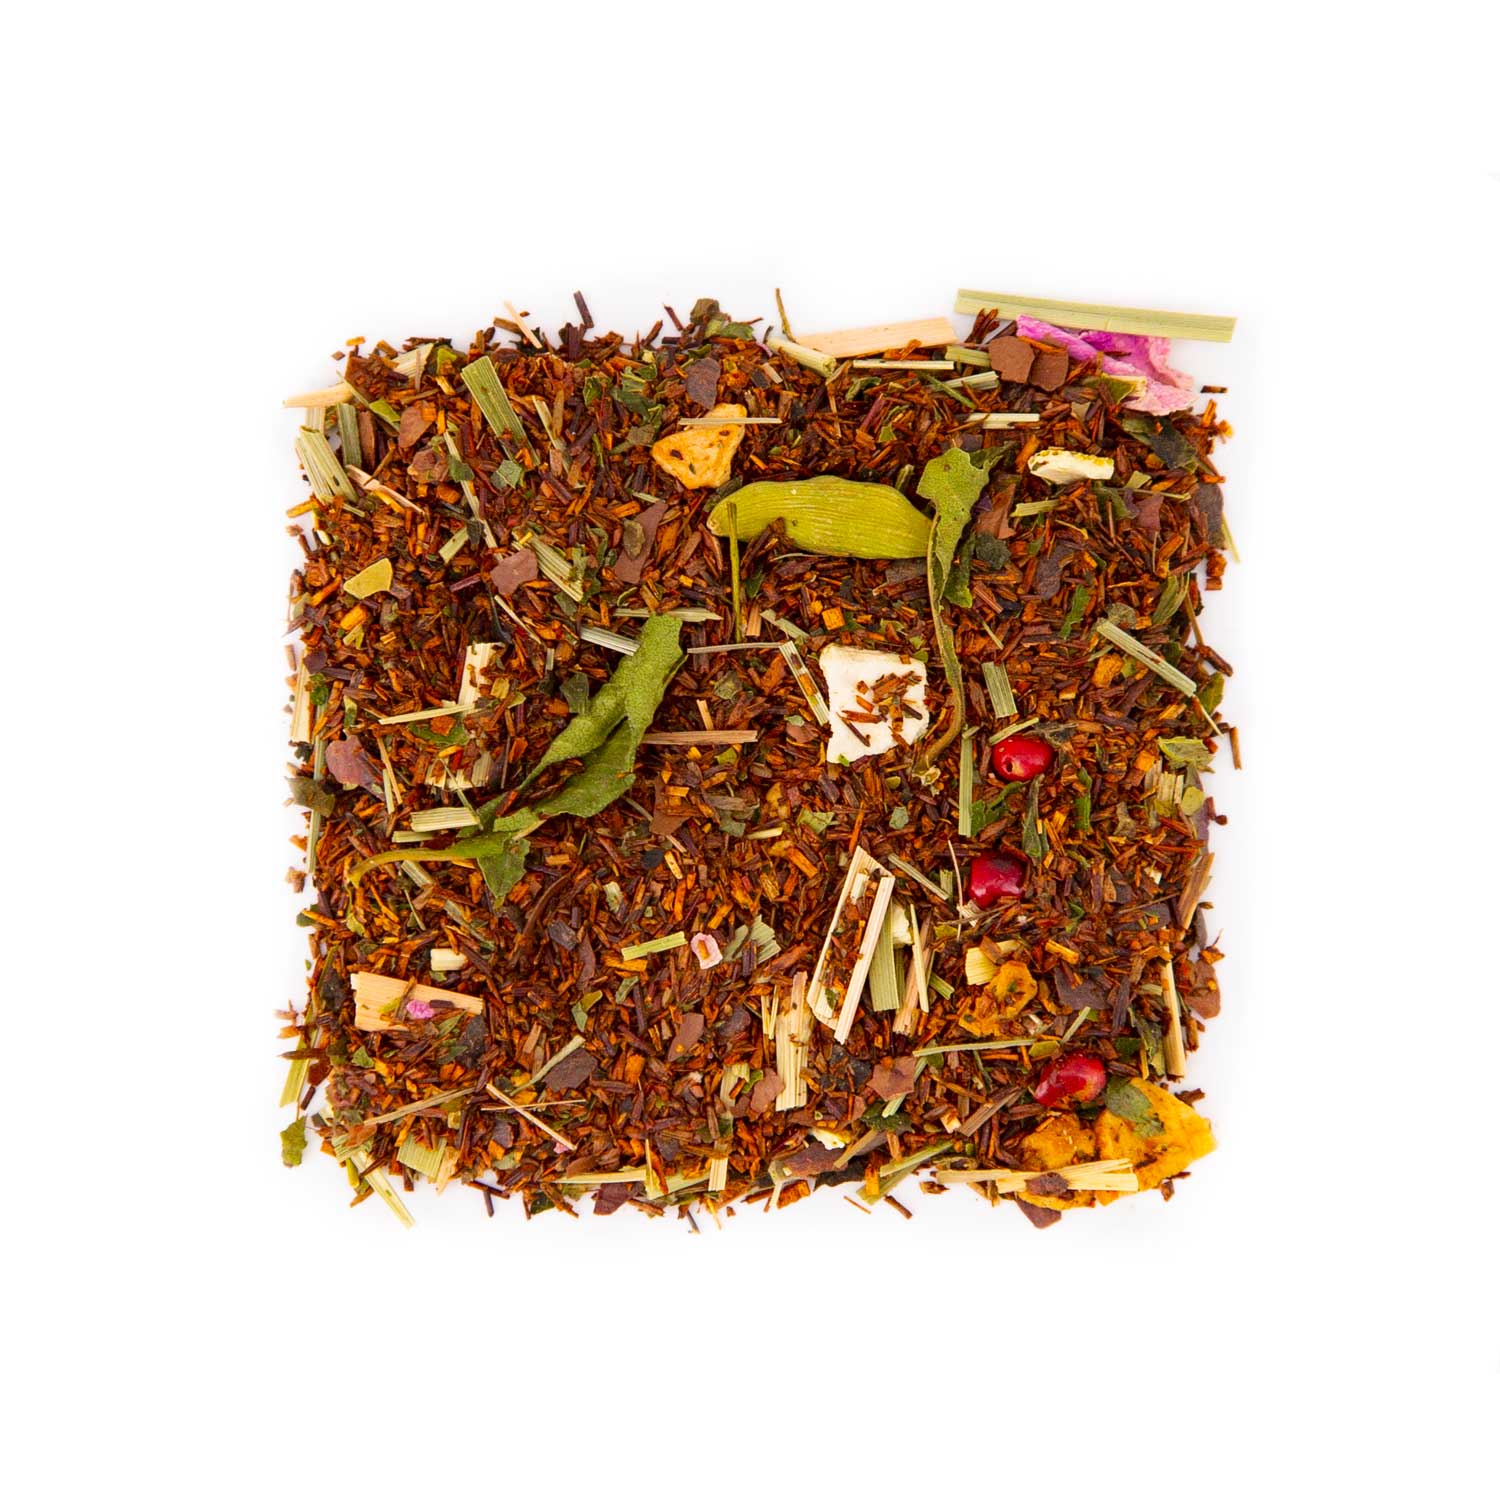 Le rooibos: une alternative au thé? Définition, propriétés et bienfaits